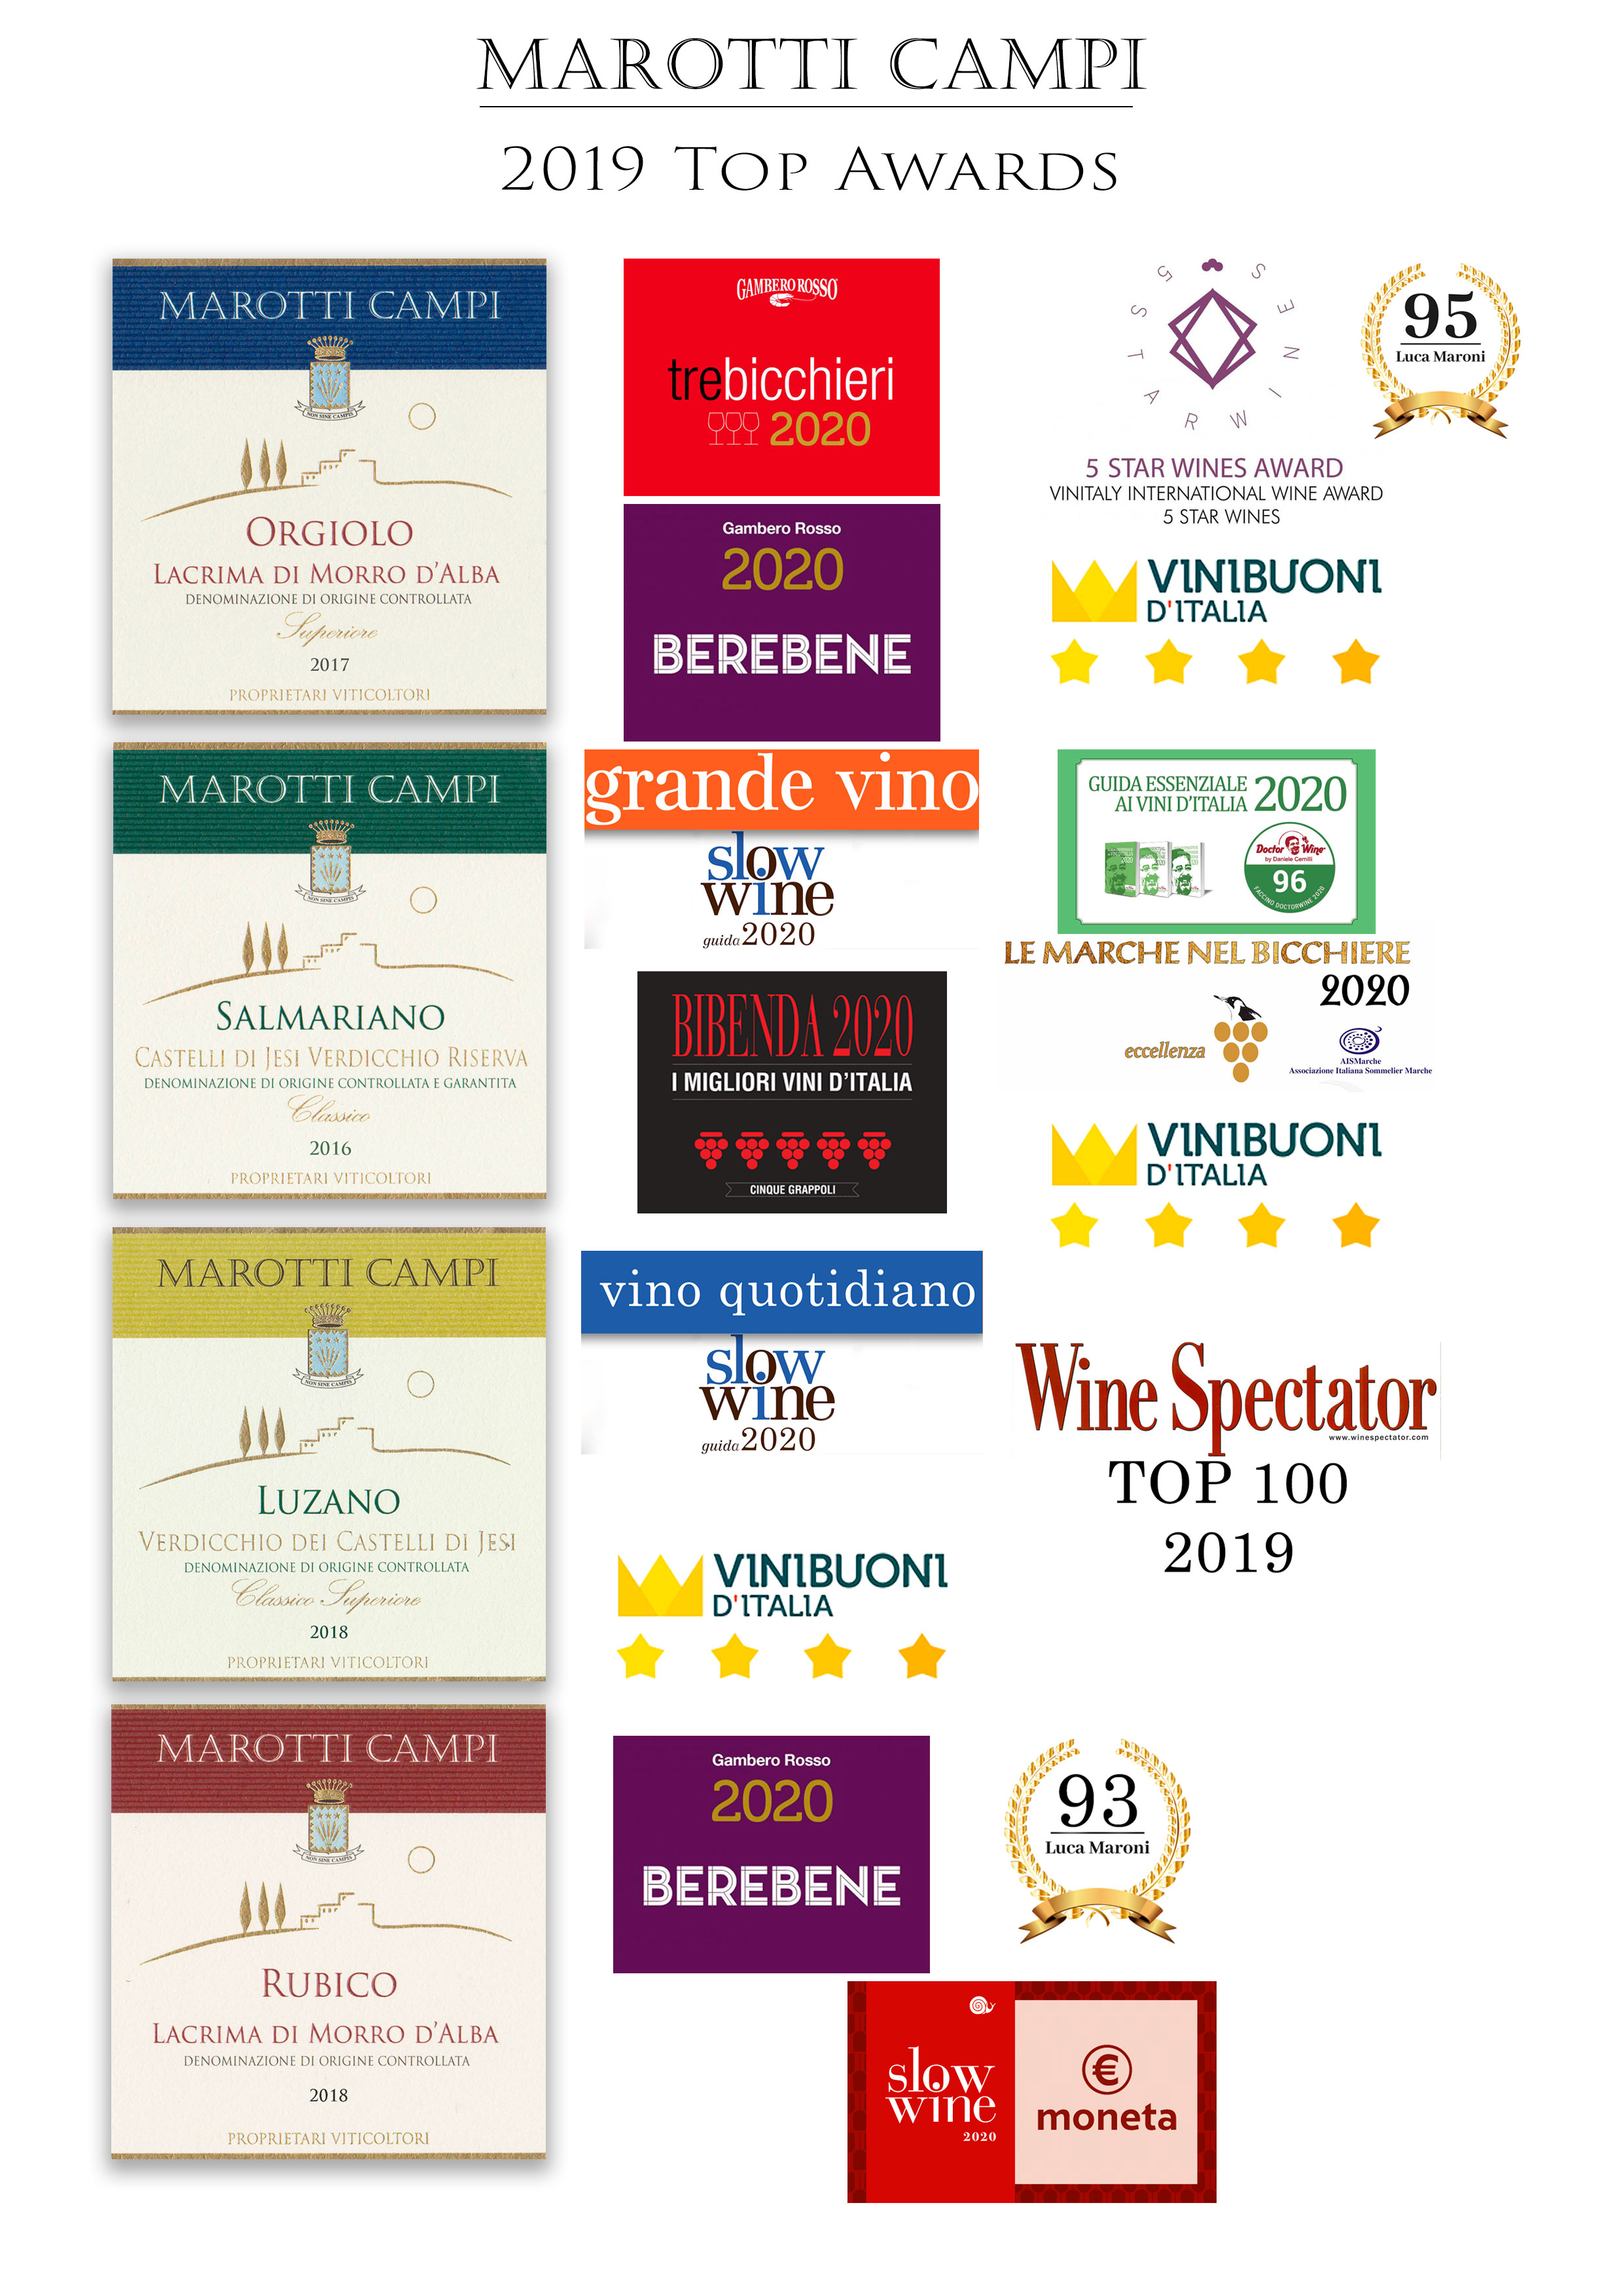 TOP-AWARDS-2019-Marotti-Campi TOP100WS, Tre Bicchieri Gambero Rosso, Grande Vino Slow Wine, 5 Grappoli Bibenda, Doctor Wine Faccino, 5Stars Wines, Wine Spectator, Lacrima Verdicchio